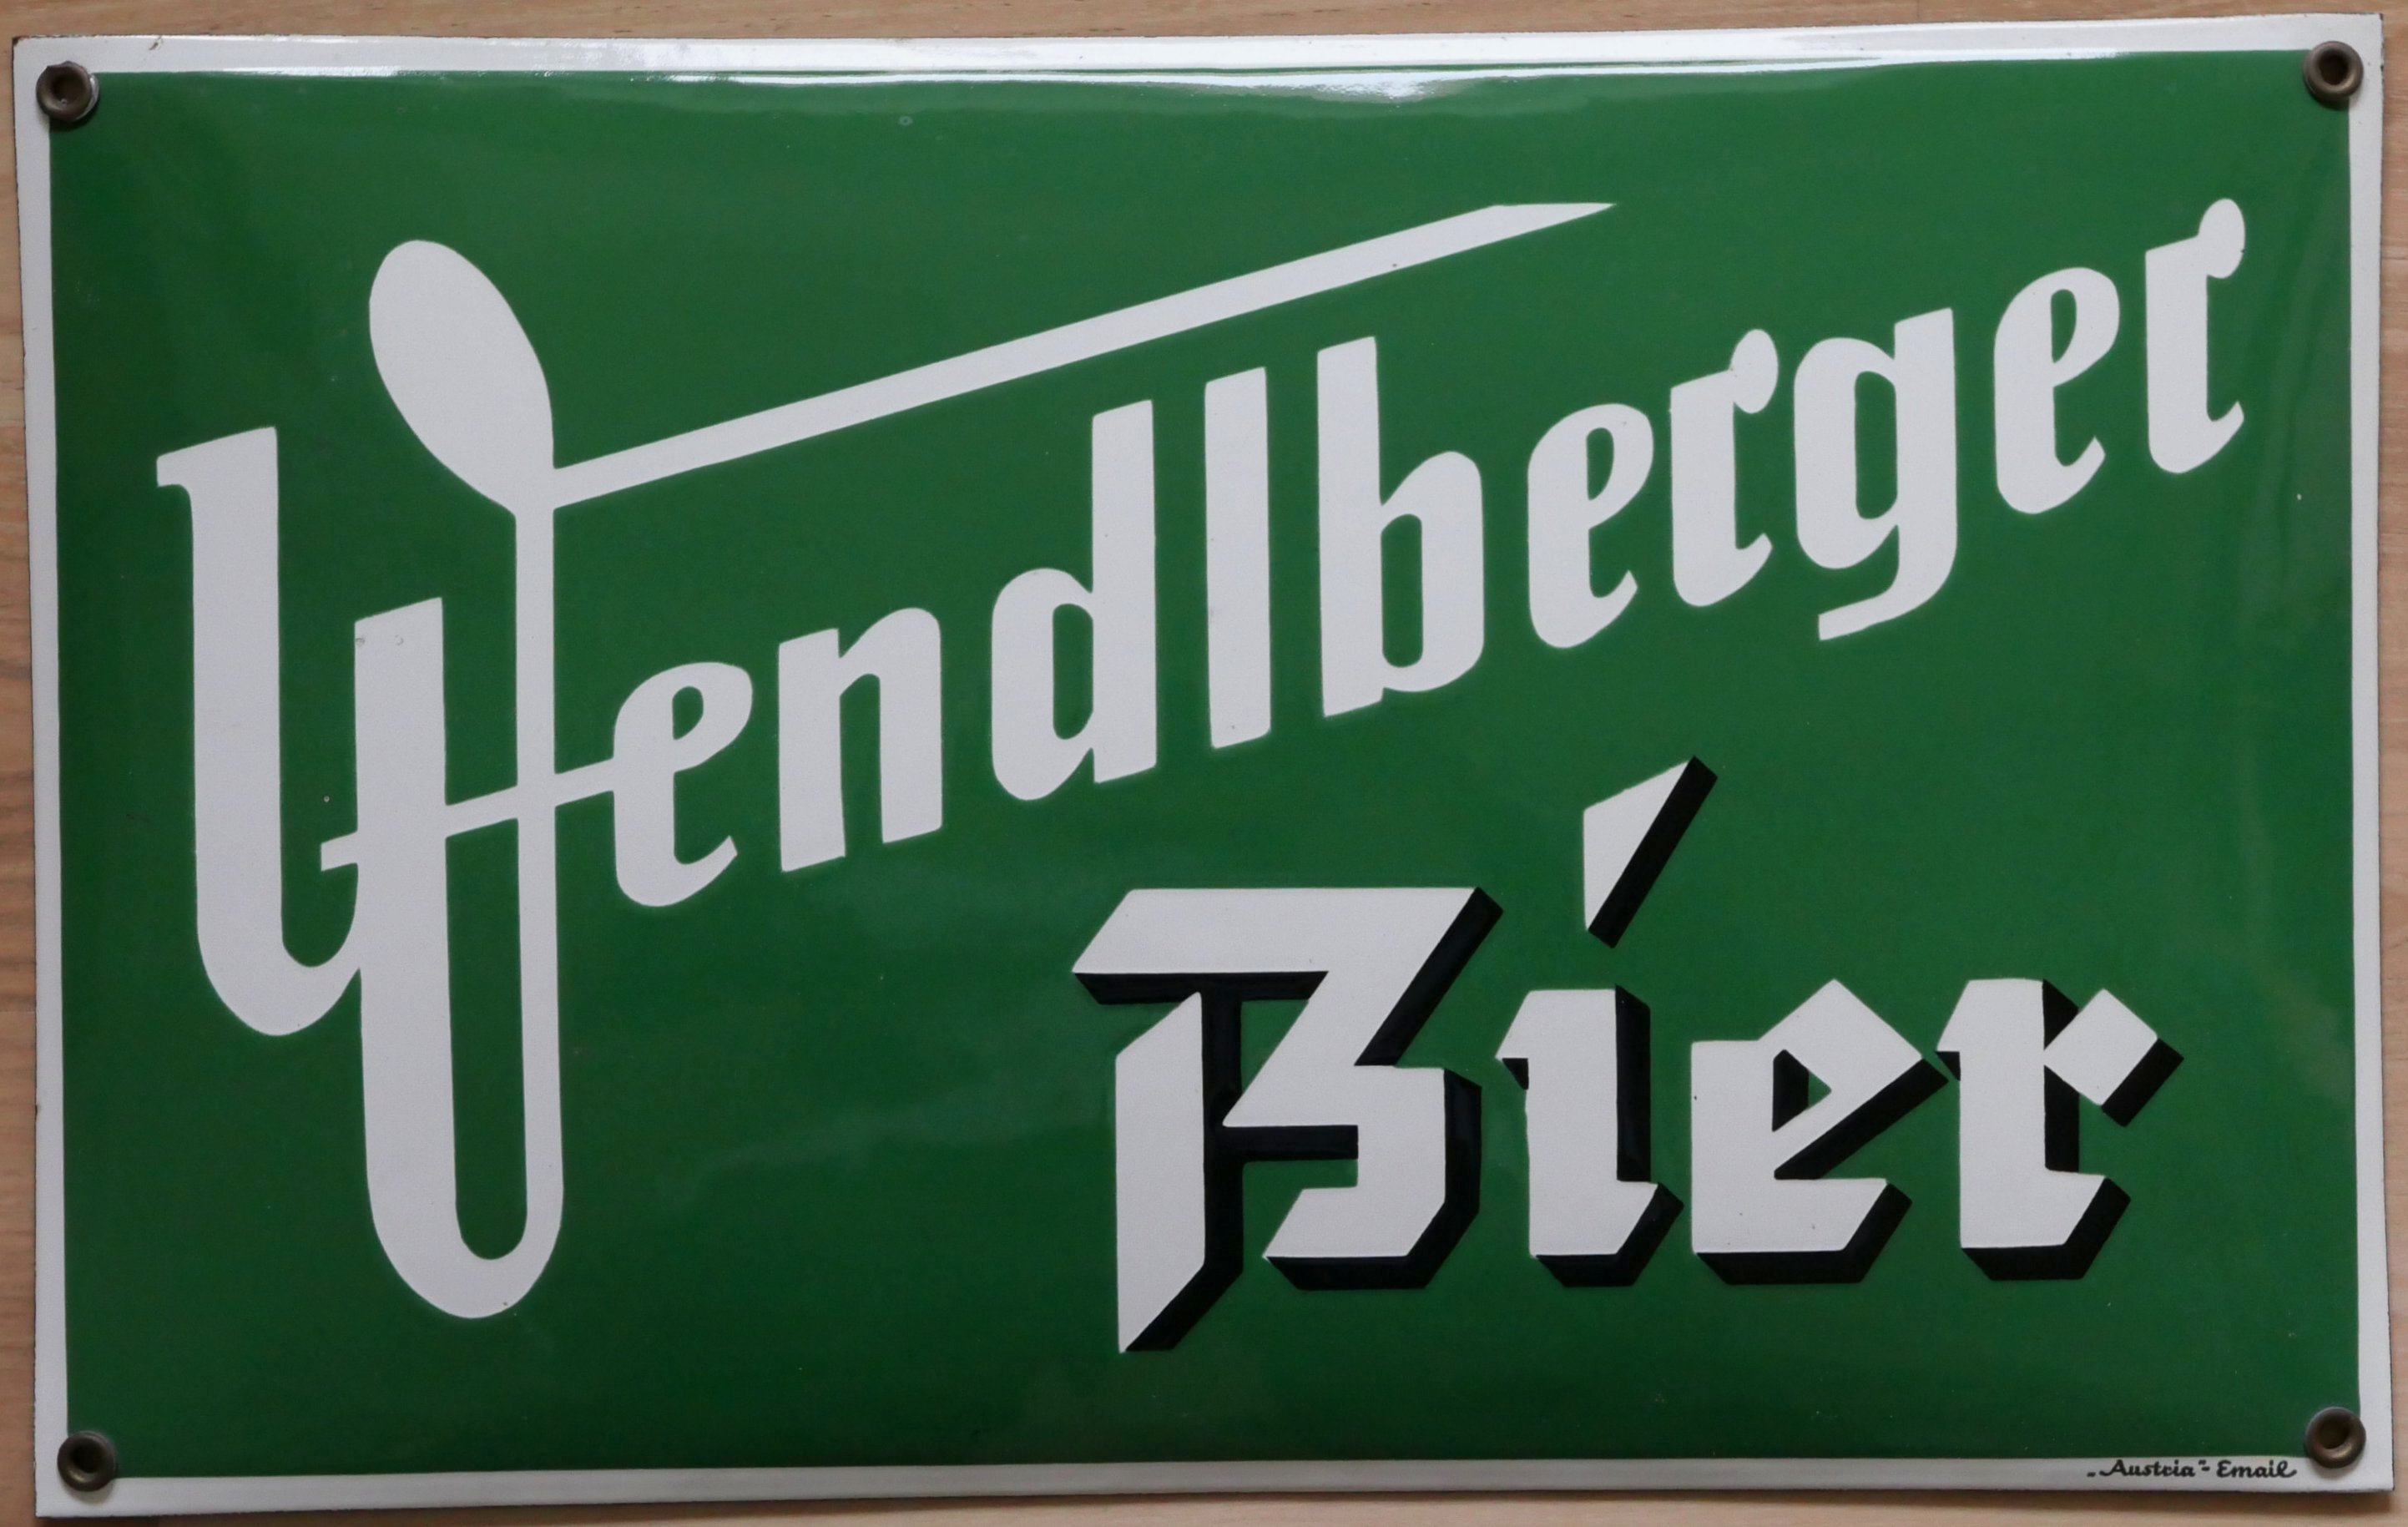 Wendlberger